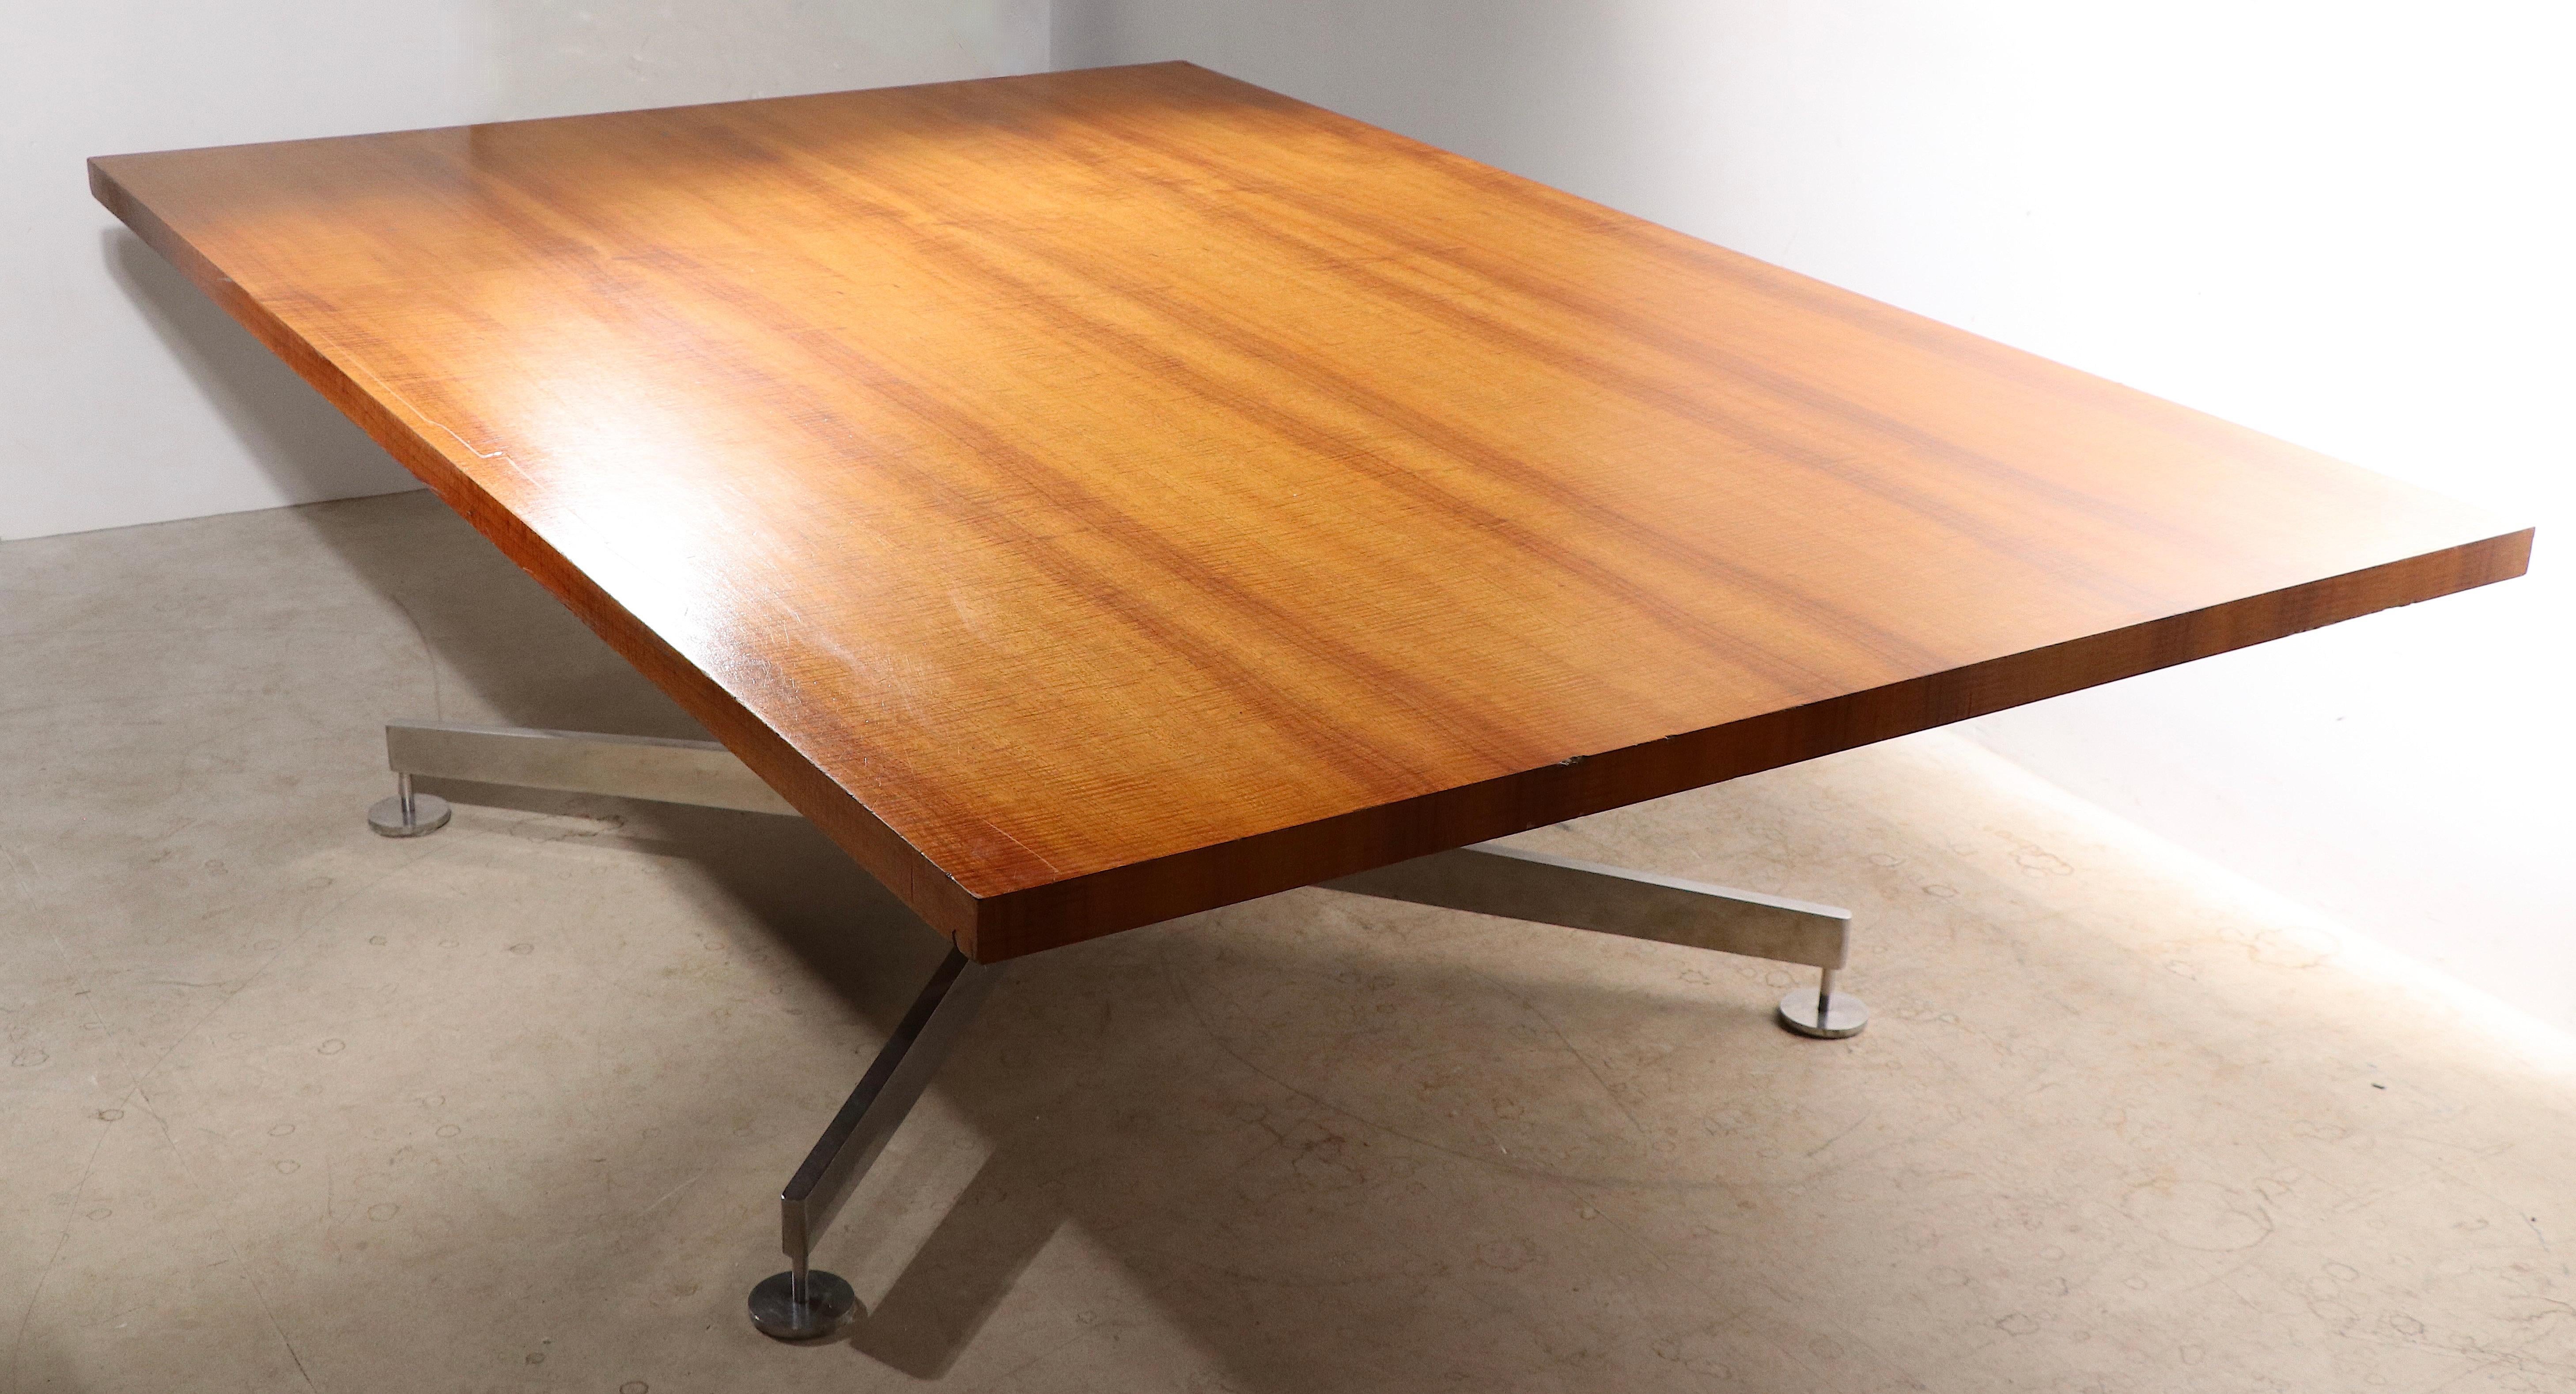 Spectaculaire grande table, conçue par Edward Wormley, fabriquée par Dunbar, ayant une base en forme de X ou de croix, construite en acier inoxydable poli, avec des pieds en disque vissés et des supports de table.  Les sommets  sont construites  de